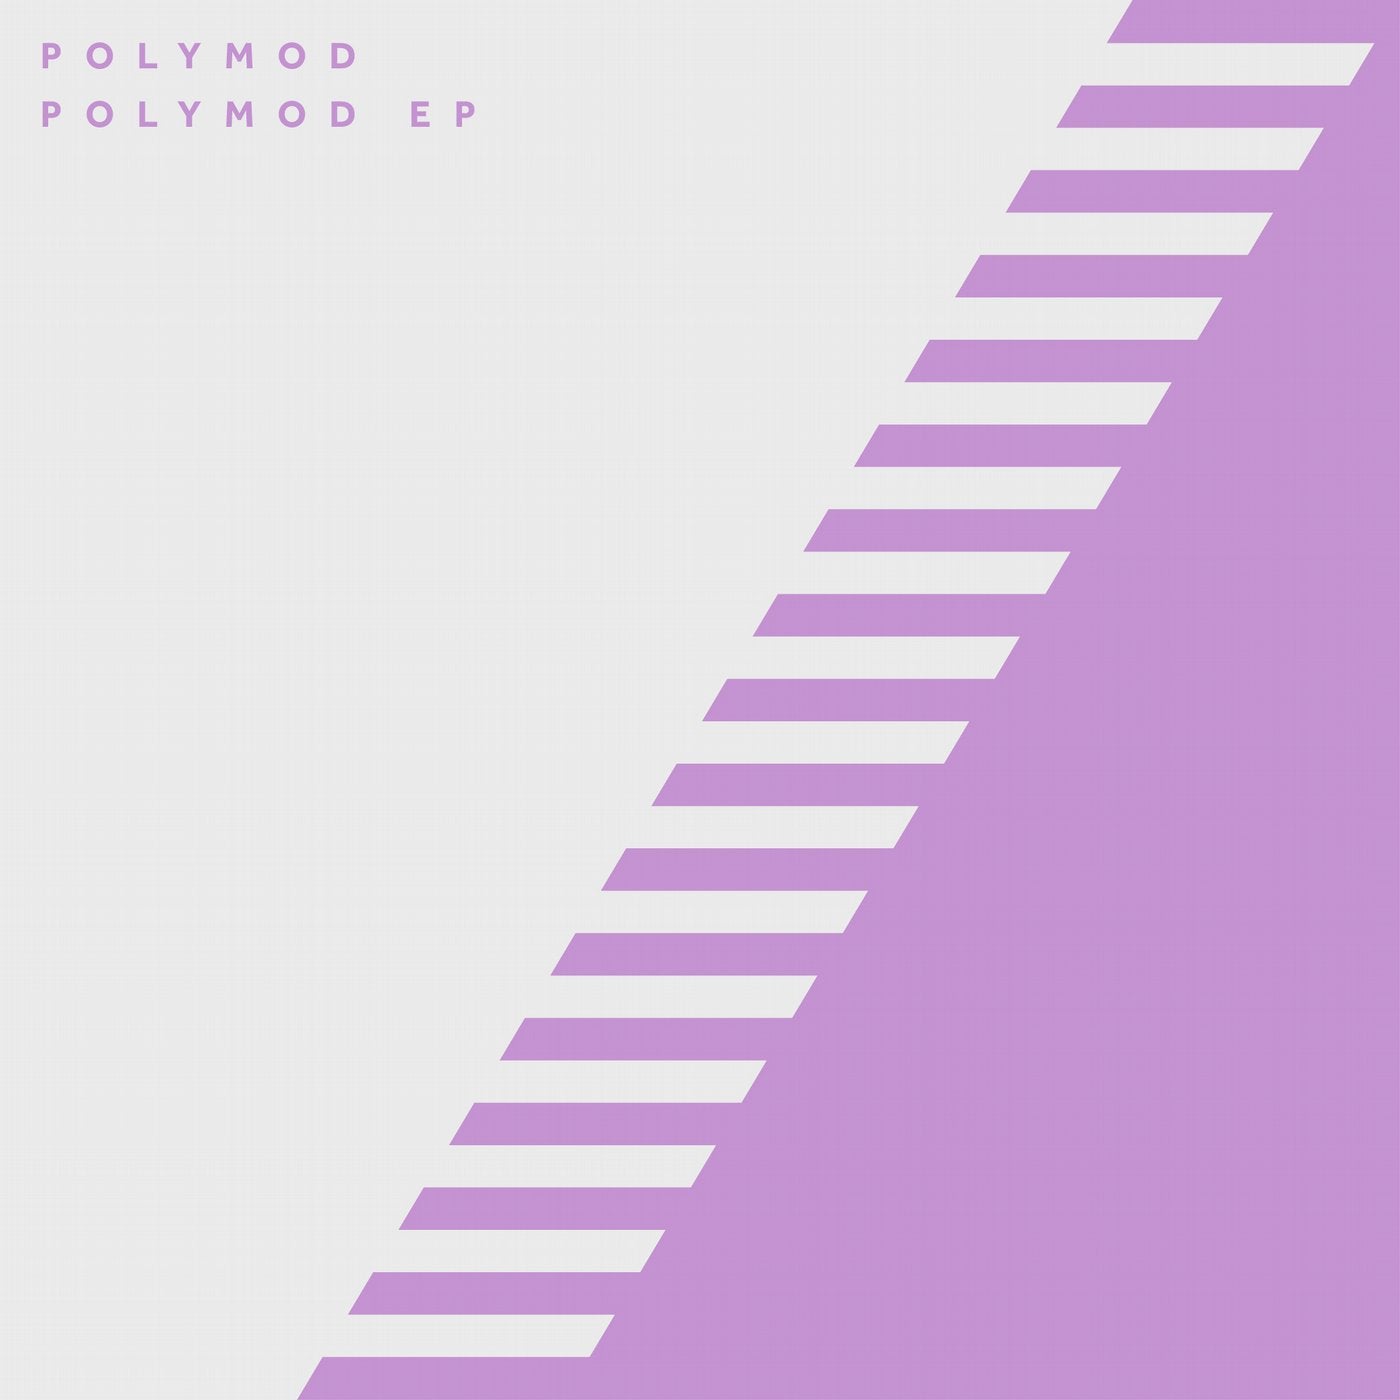 Polymod EP